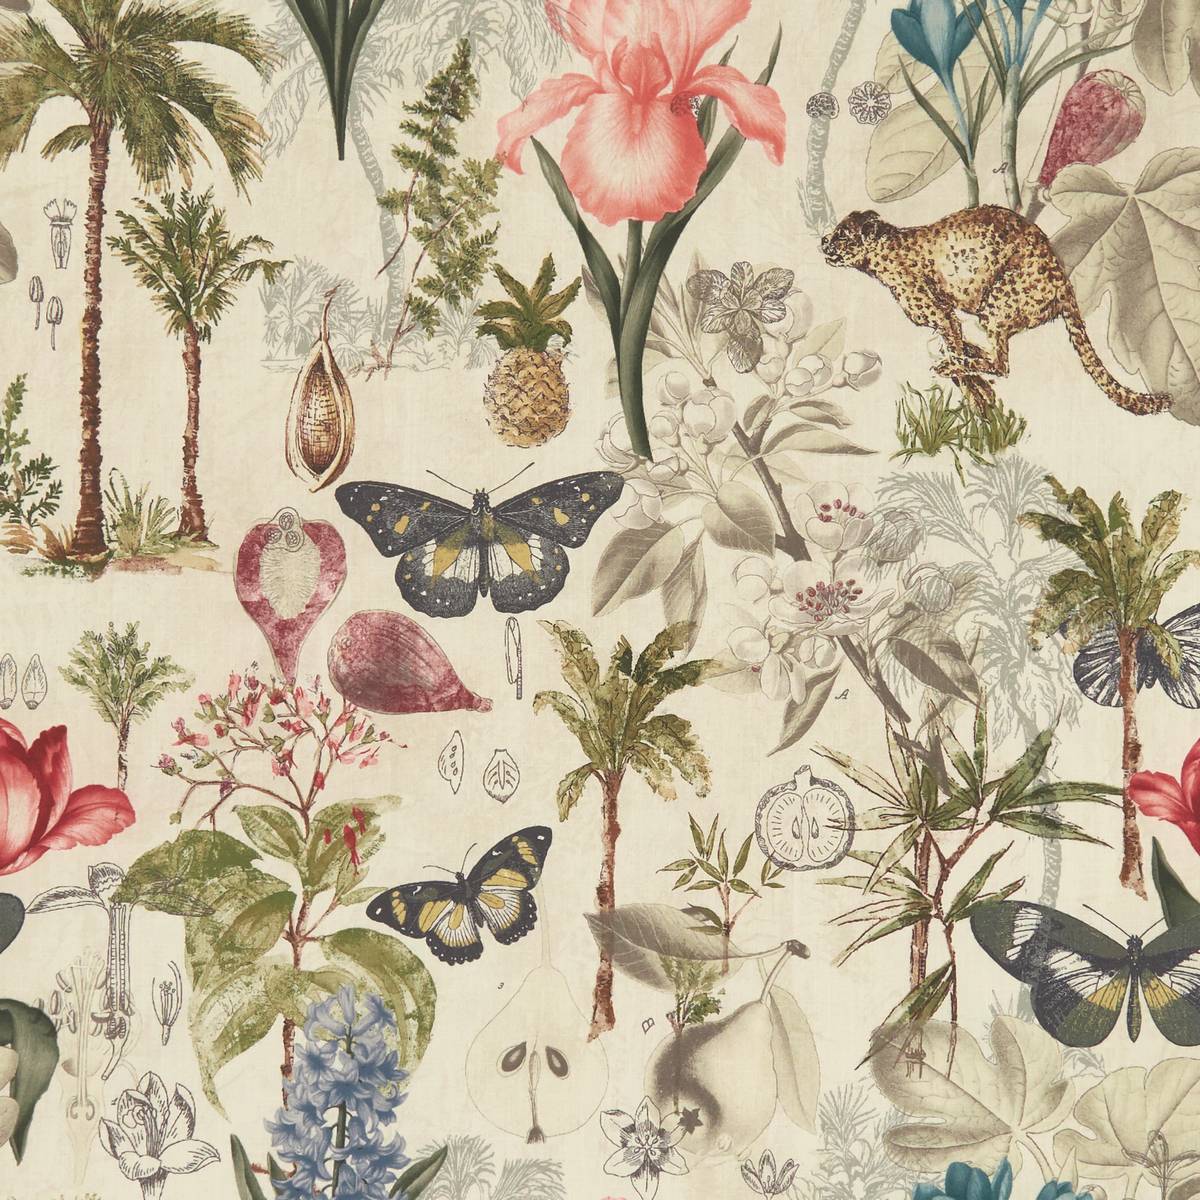 Botany Tropical Fabric by Clarke & Clarke